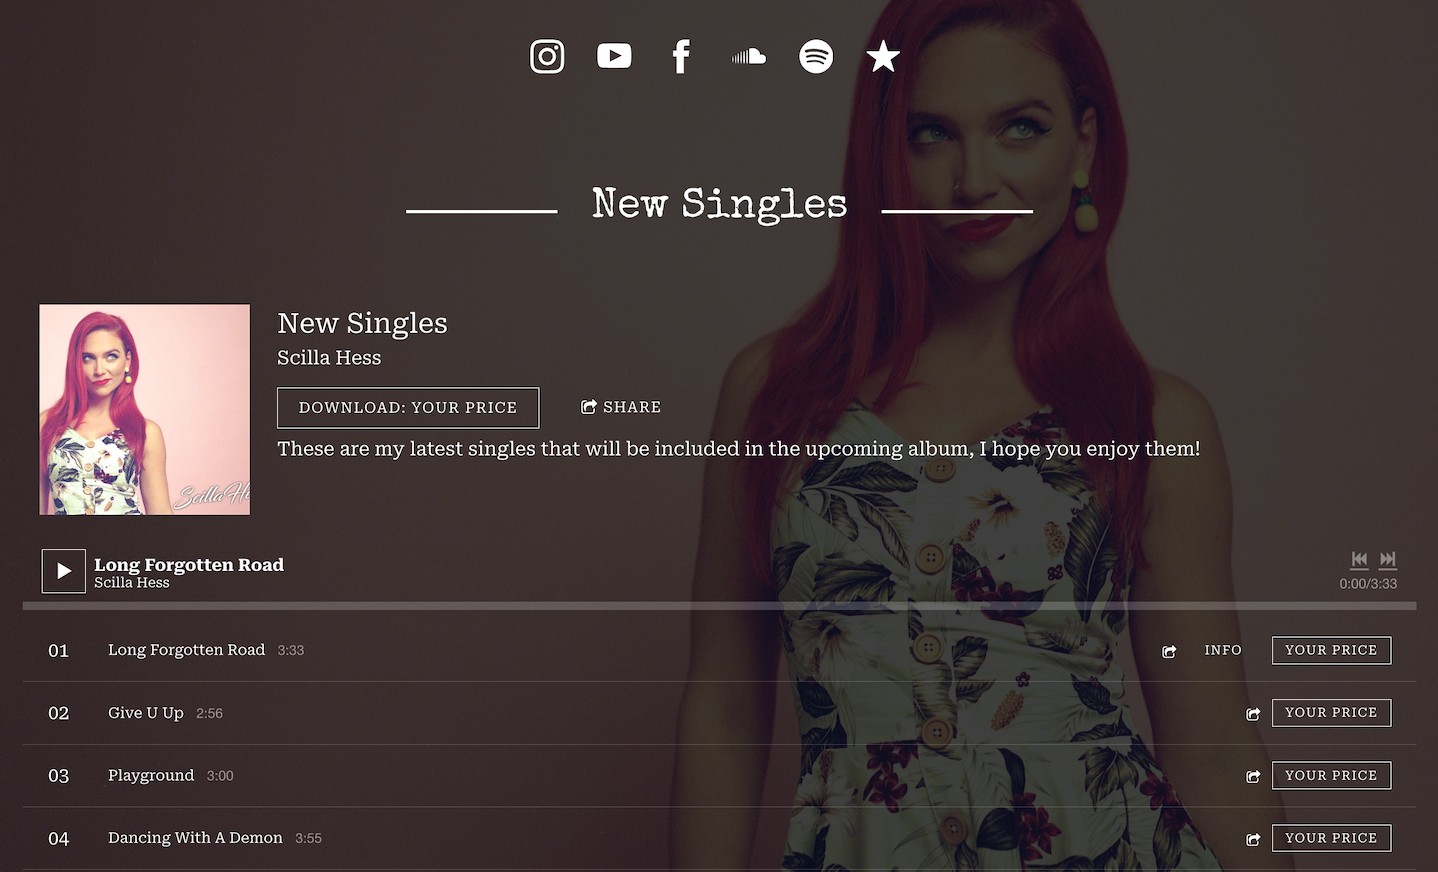 How to build a singer website: screenshot of artist Scilla Hess' music website